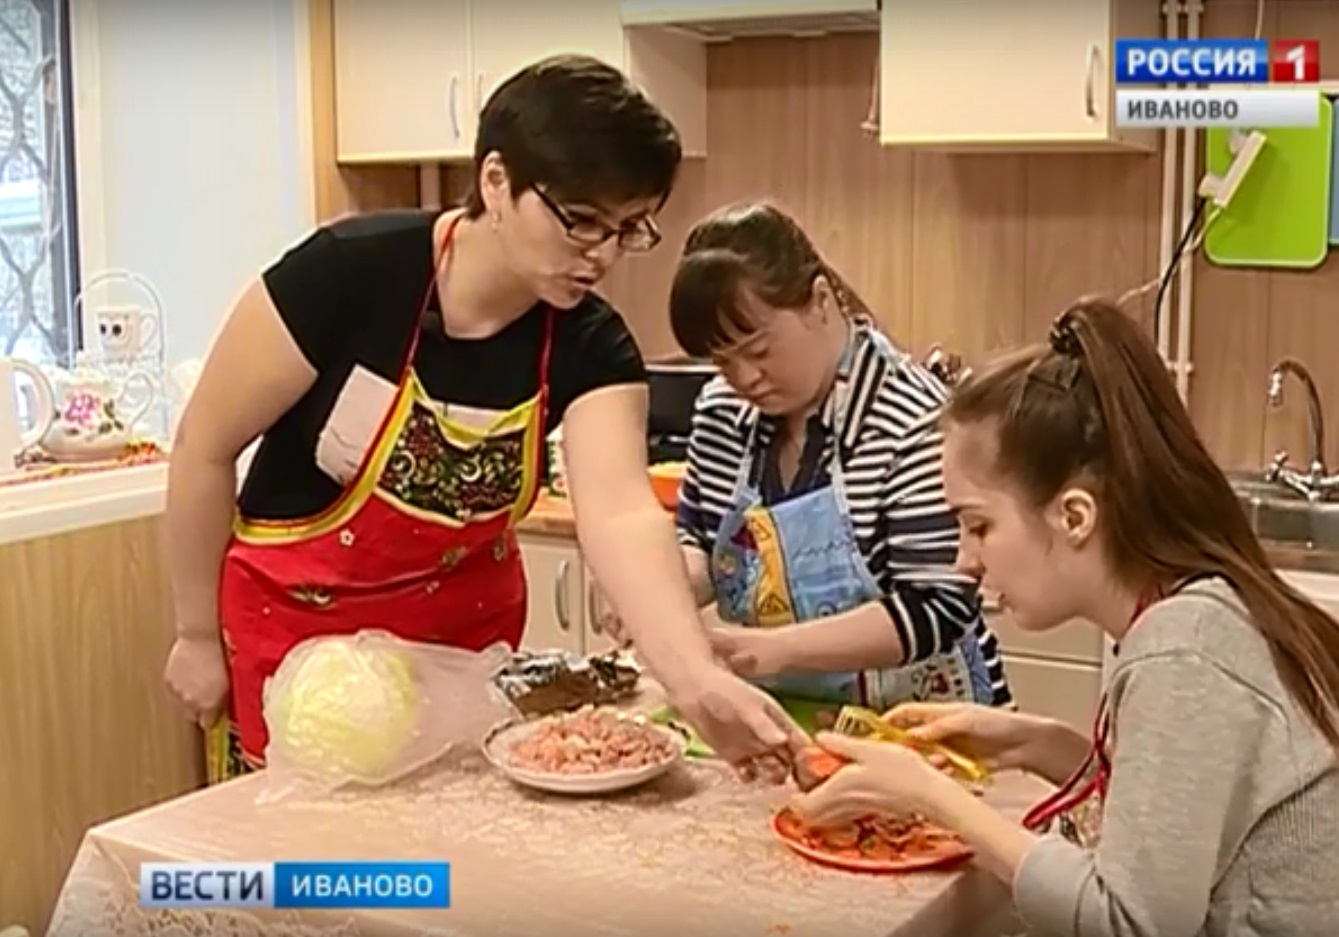 Опыт трудовой адаптации молодых инвалидов в Иванове представят на примере учебных квартир